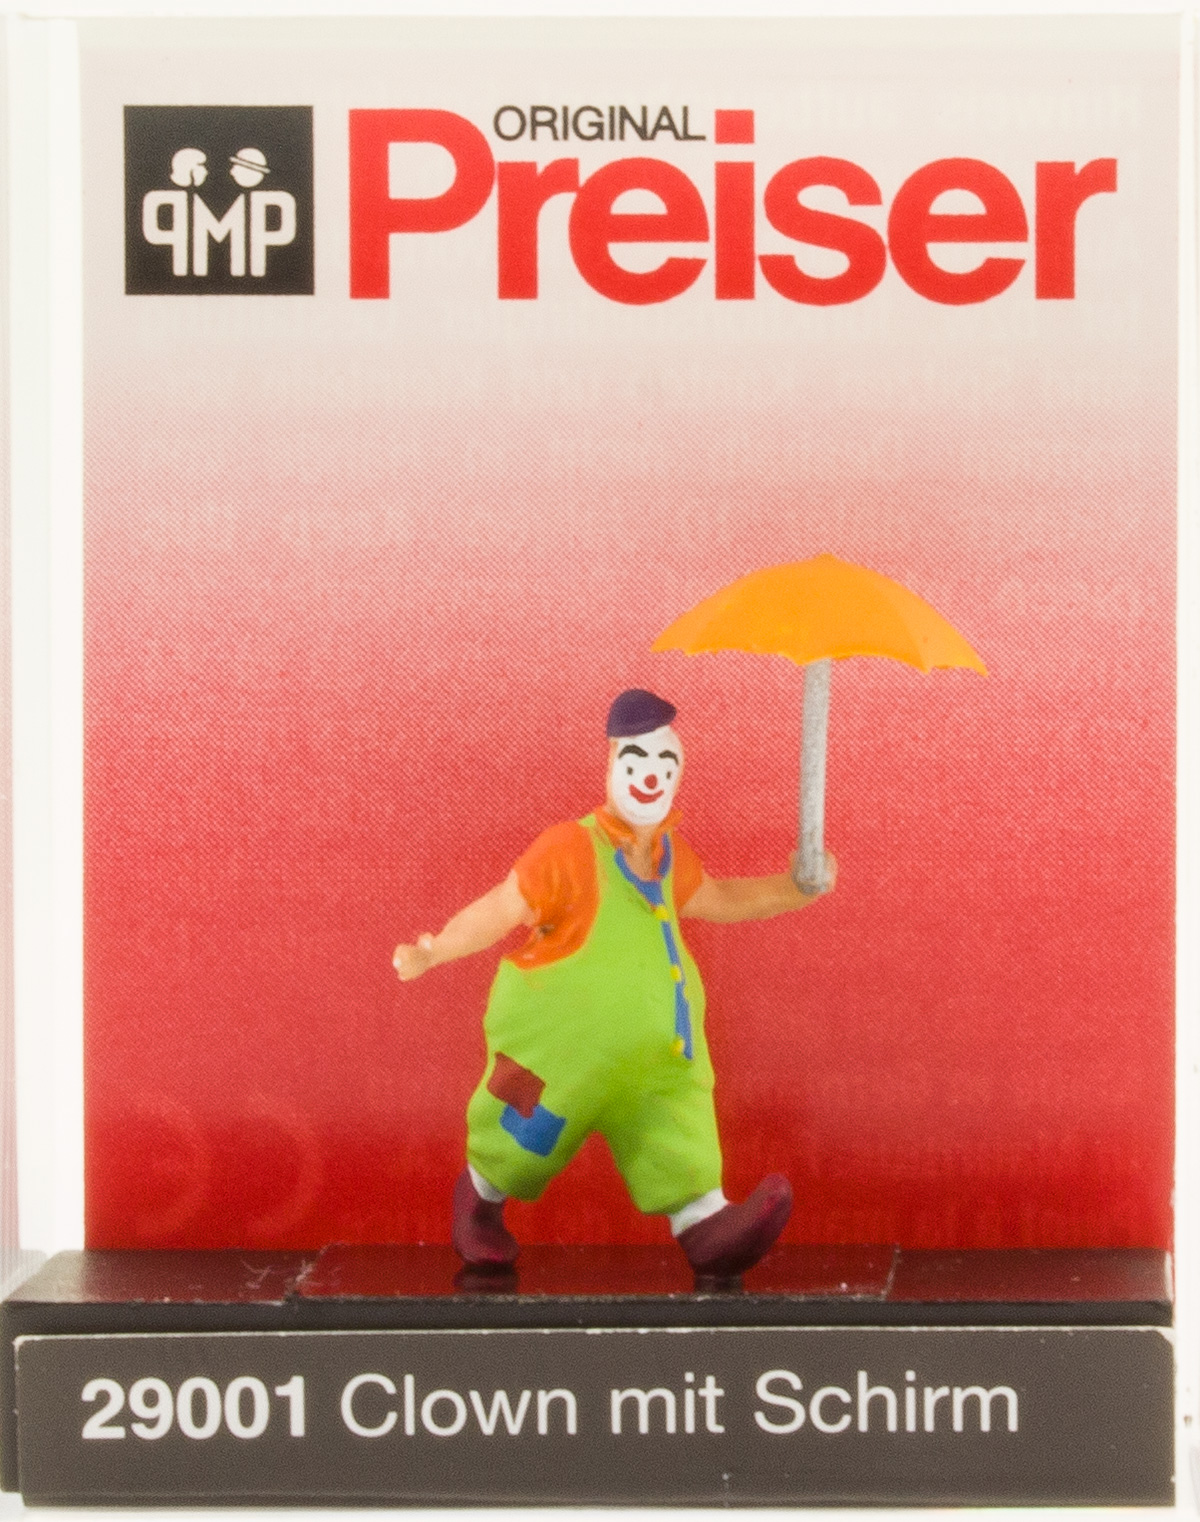 Prieser 29001 Clown